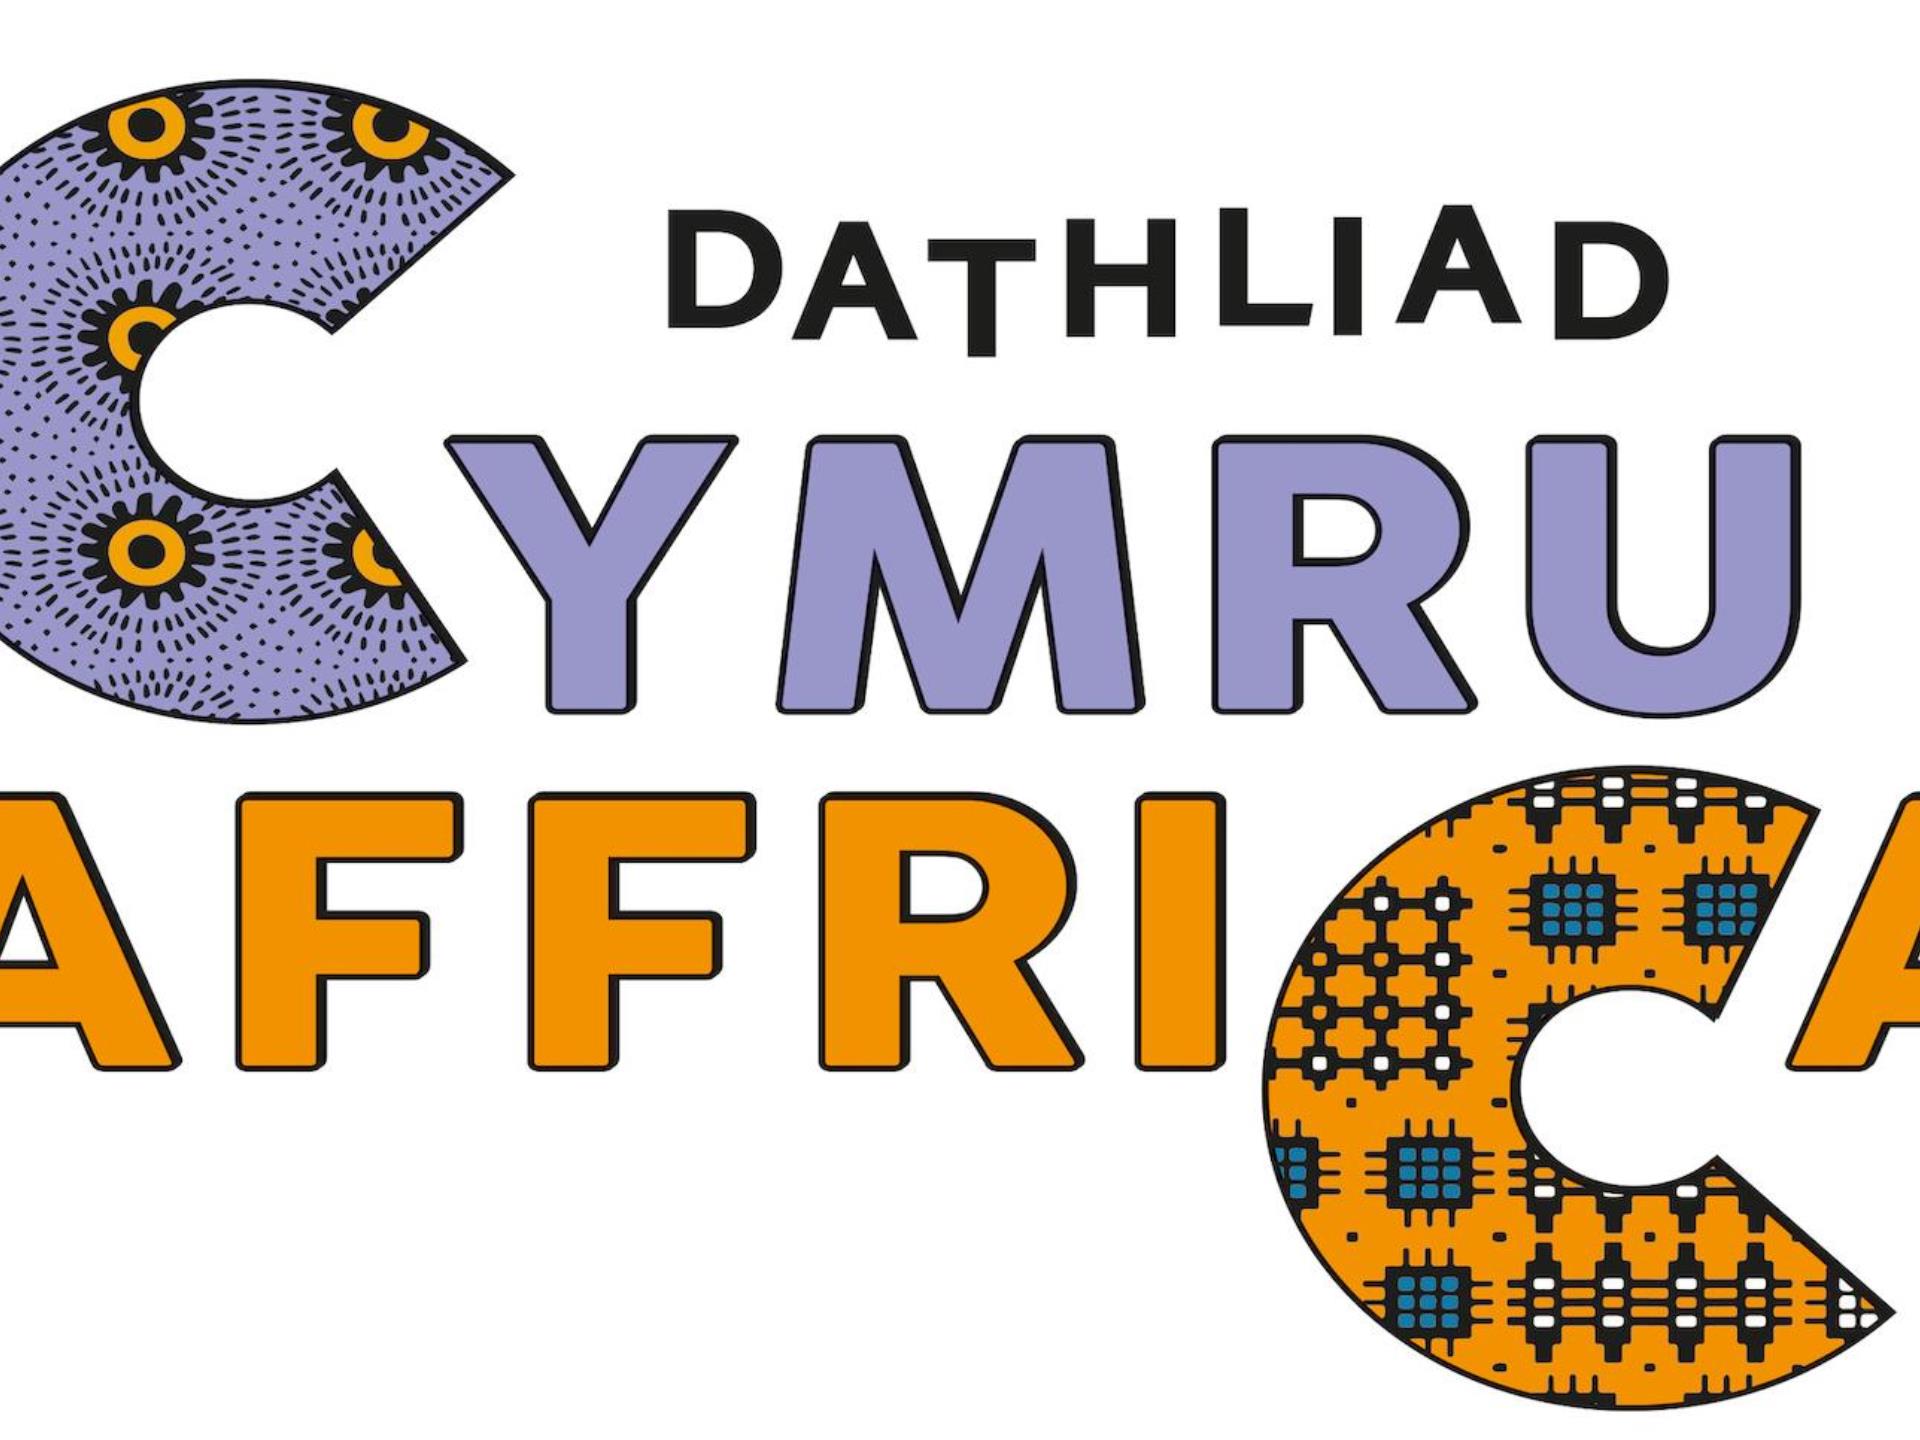 Dathliad Cymru-Affrica- Cardiff